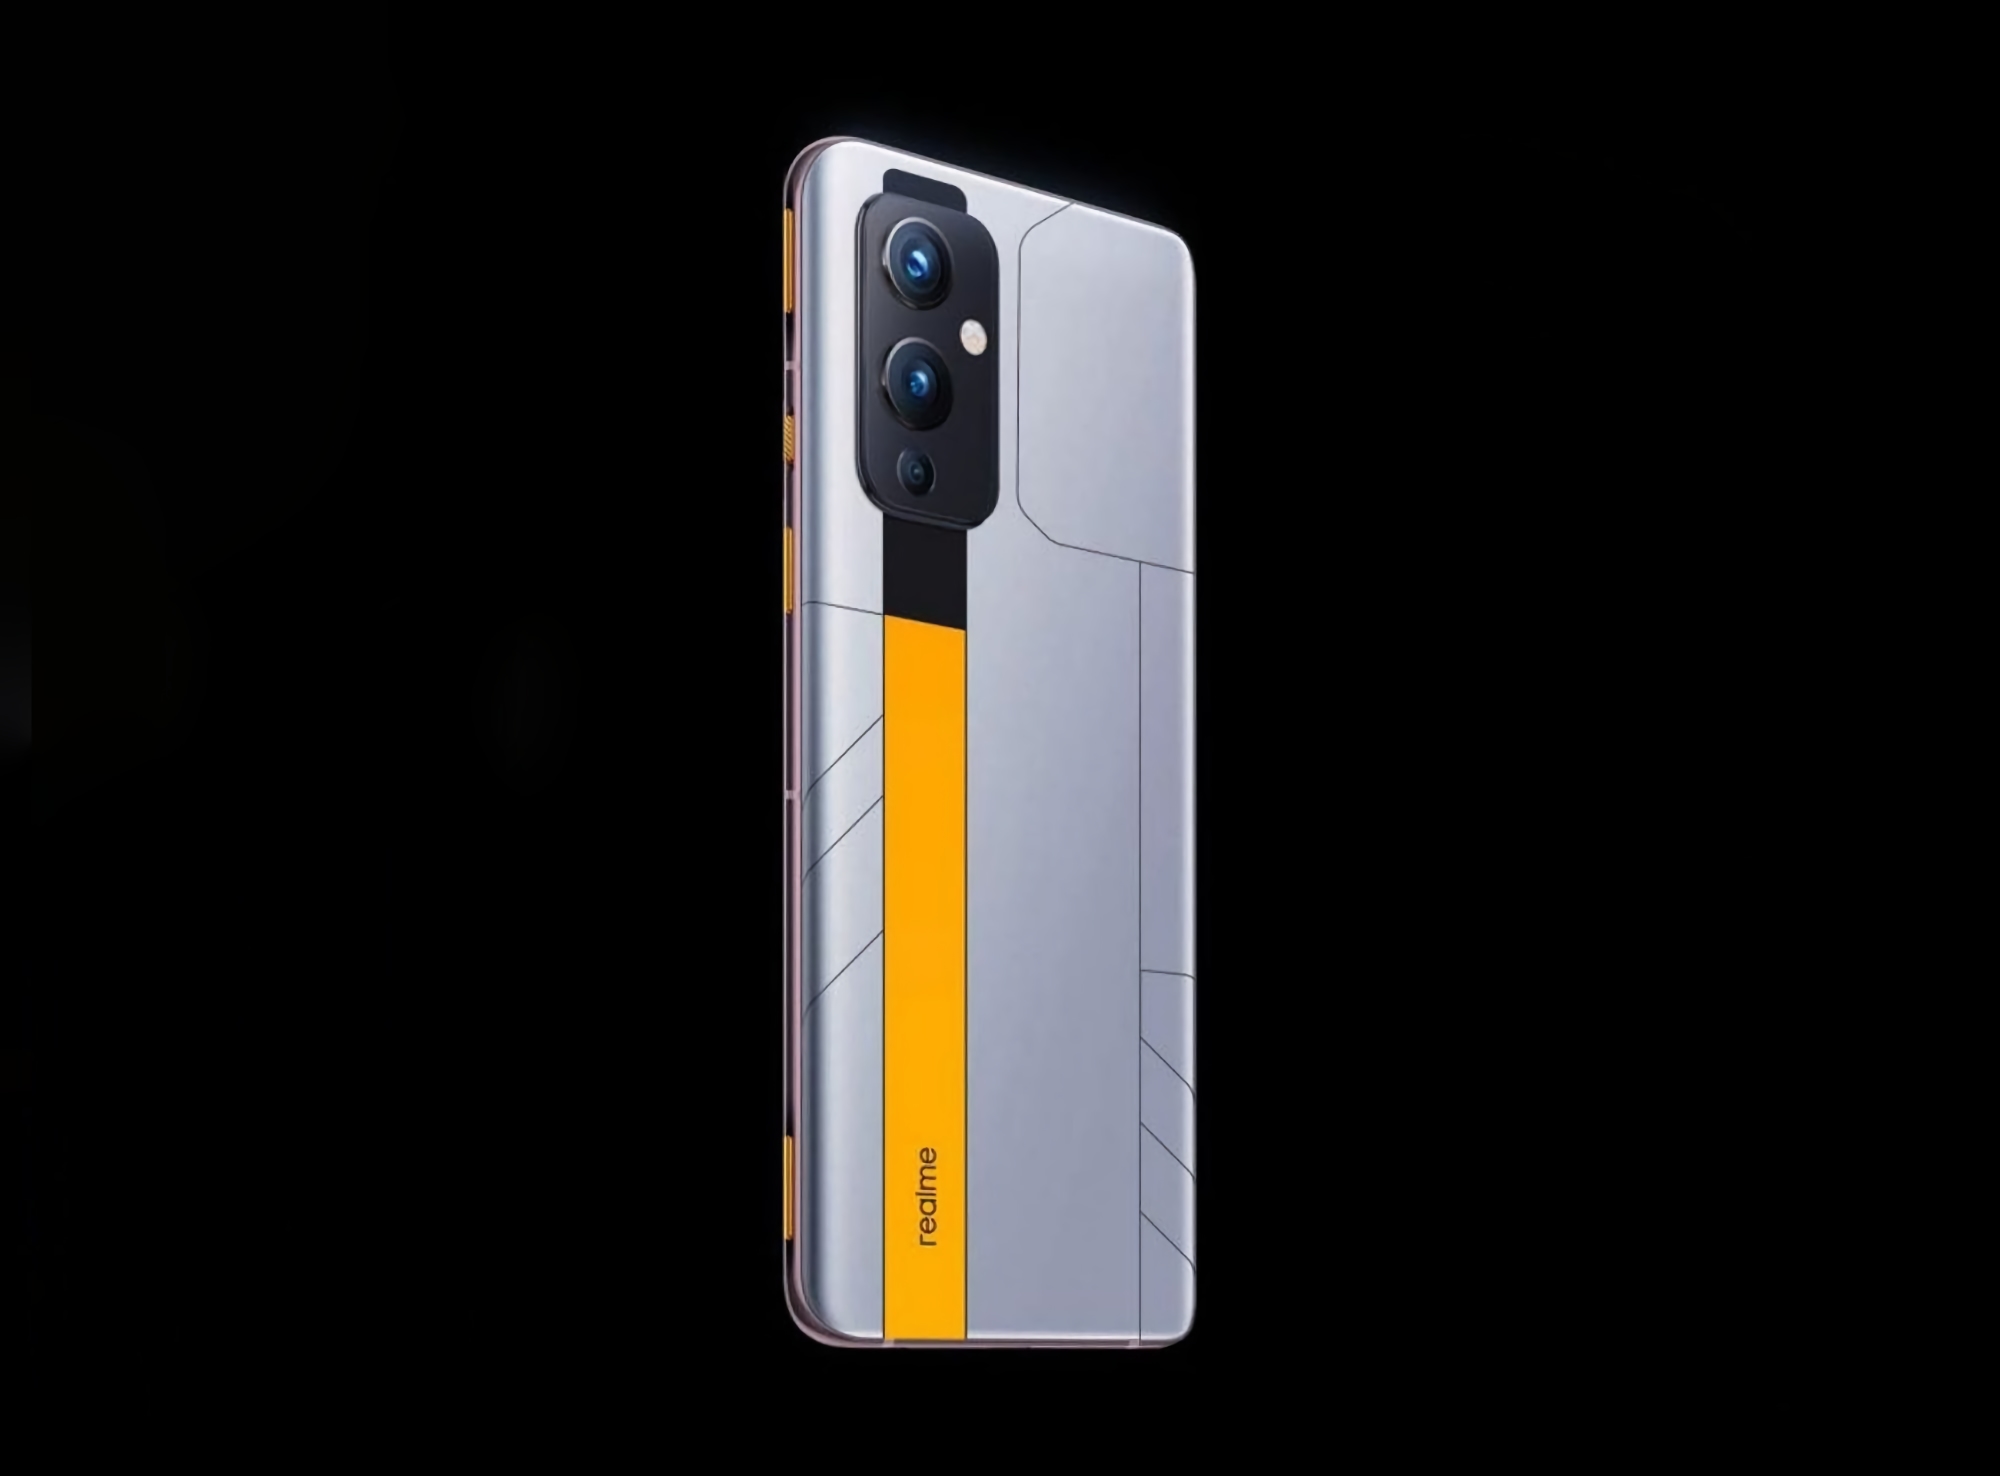 Chip Dimensity 9000, carga de 120W y triple cámara: detalles y render del smartphone realme GT Neo 3 aparecido en la red